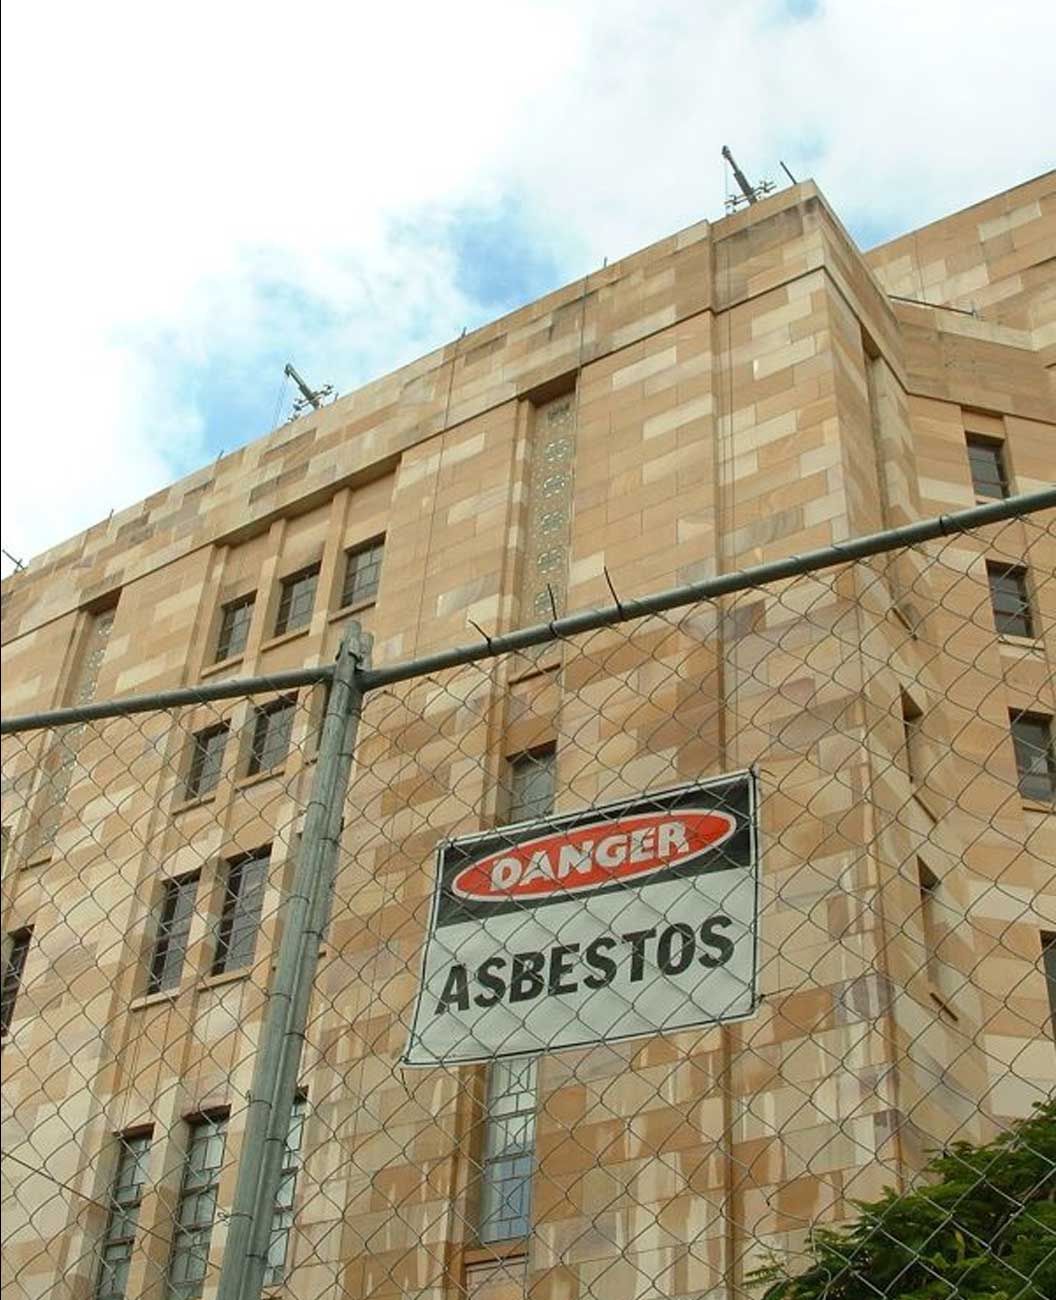 Asbestos warning in buildings